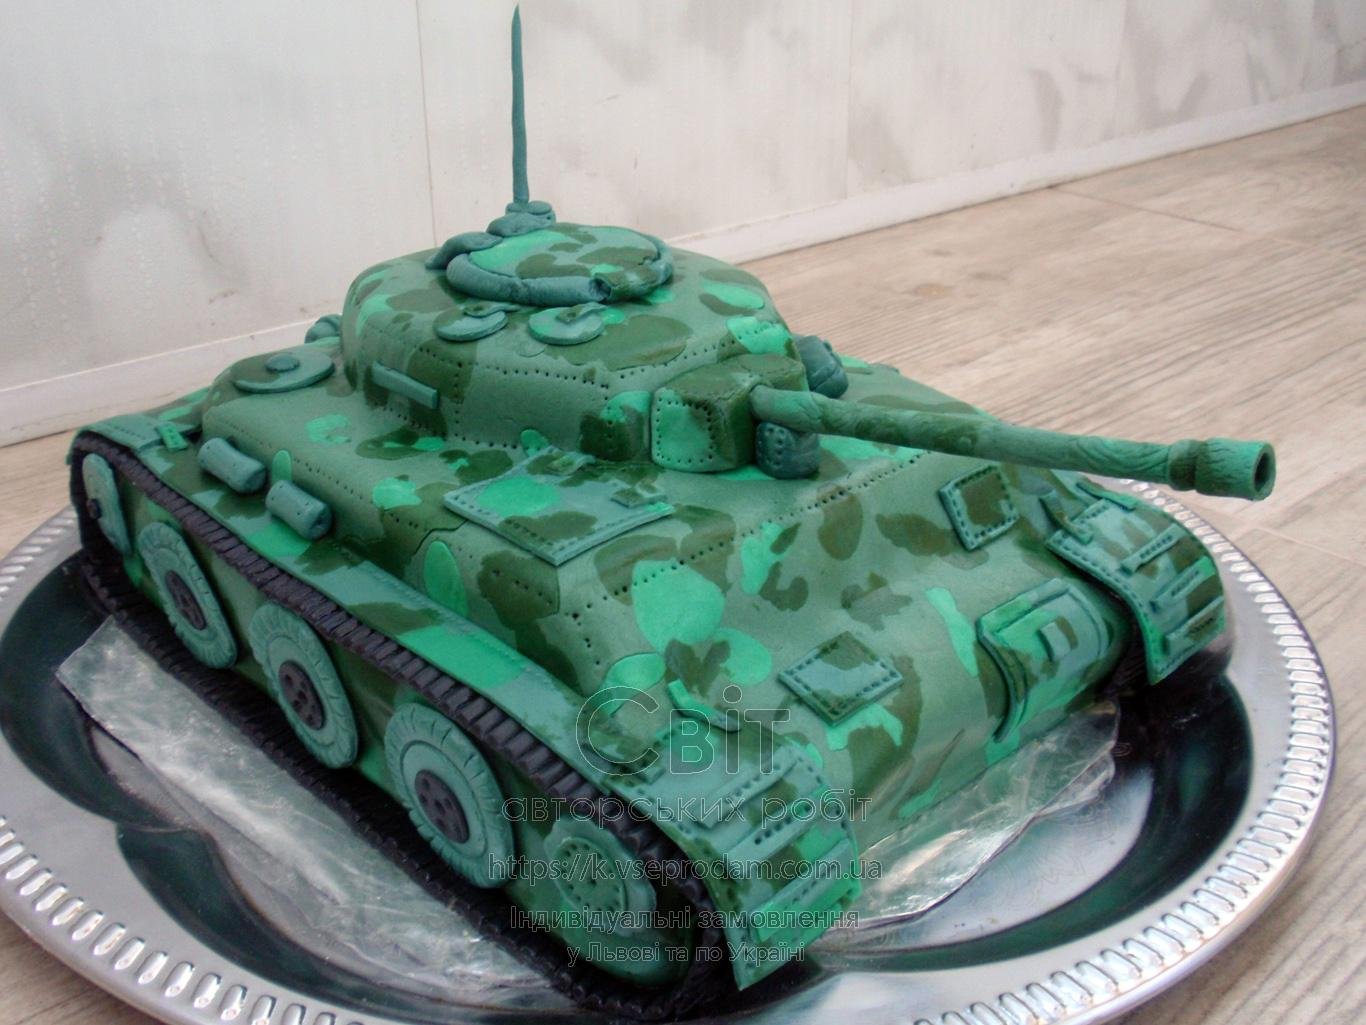 Торт из танка с белковым кремом